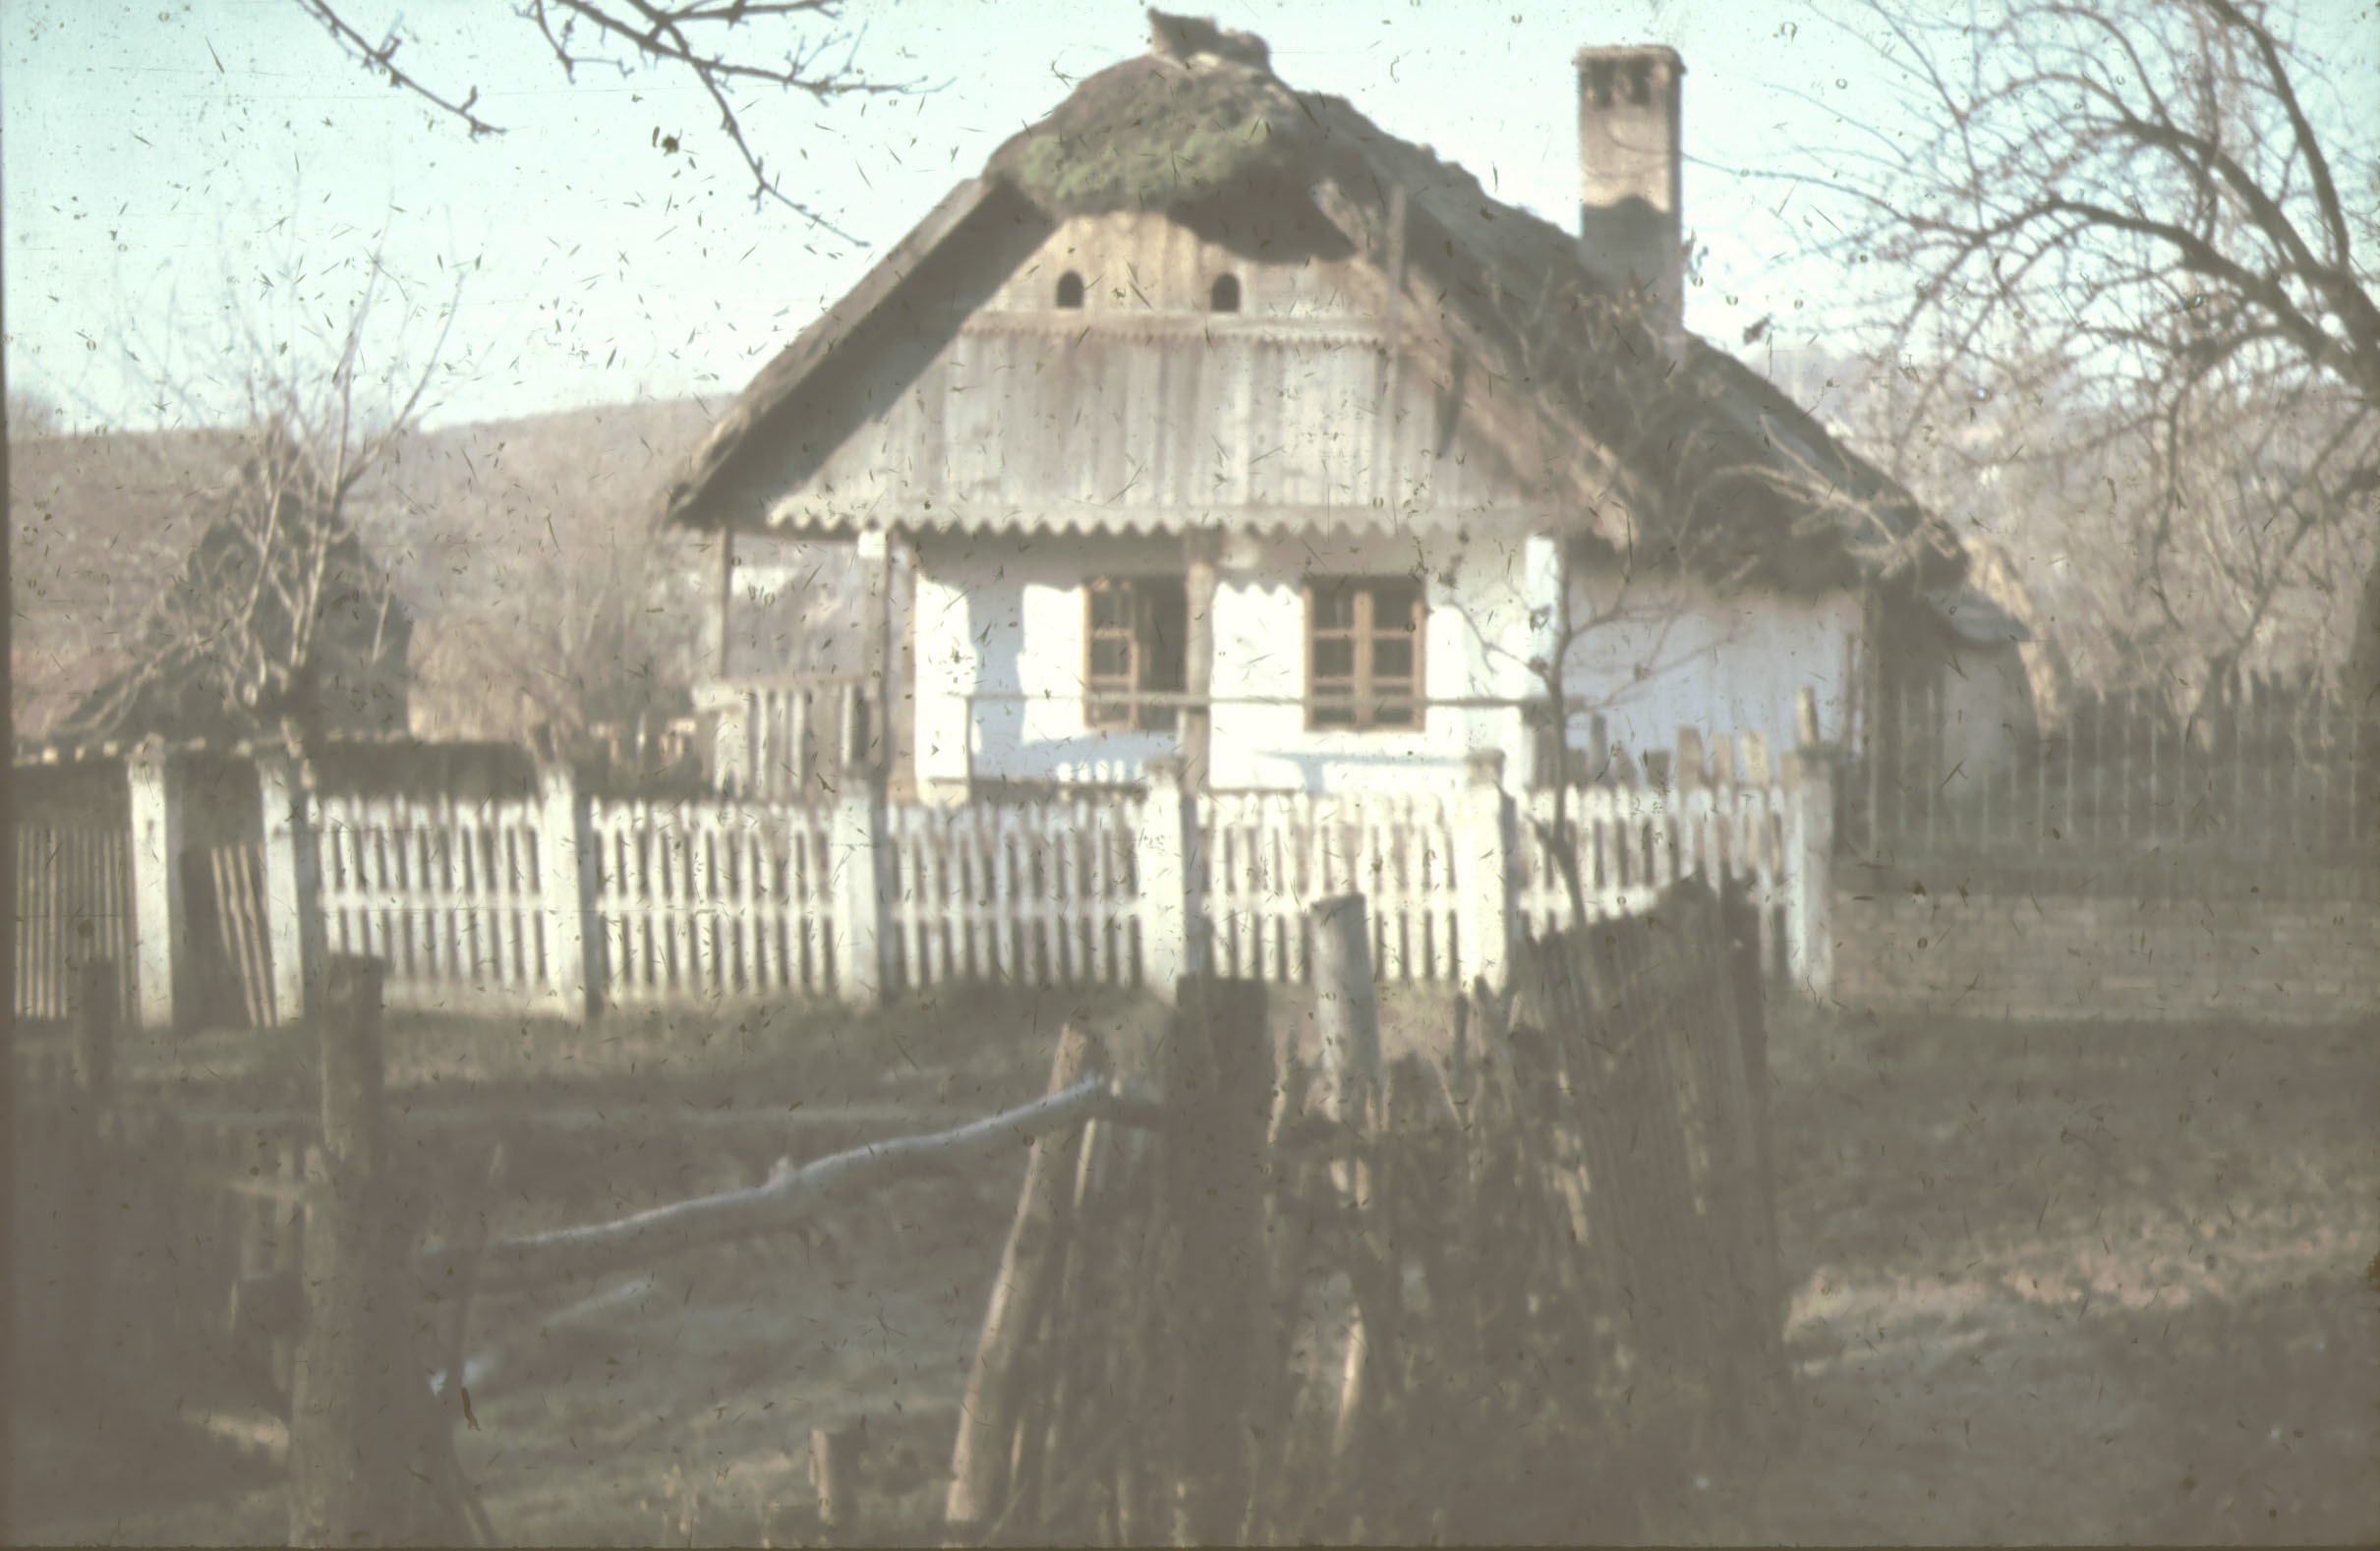 Deszkaoromfalas, zsuppos, faragott oszlopos ház (Rippl-Rónai Múzeum CC BY-NC-ND)